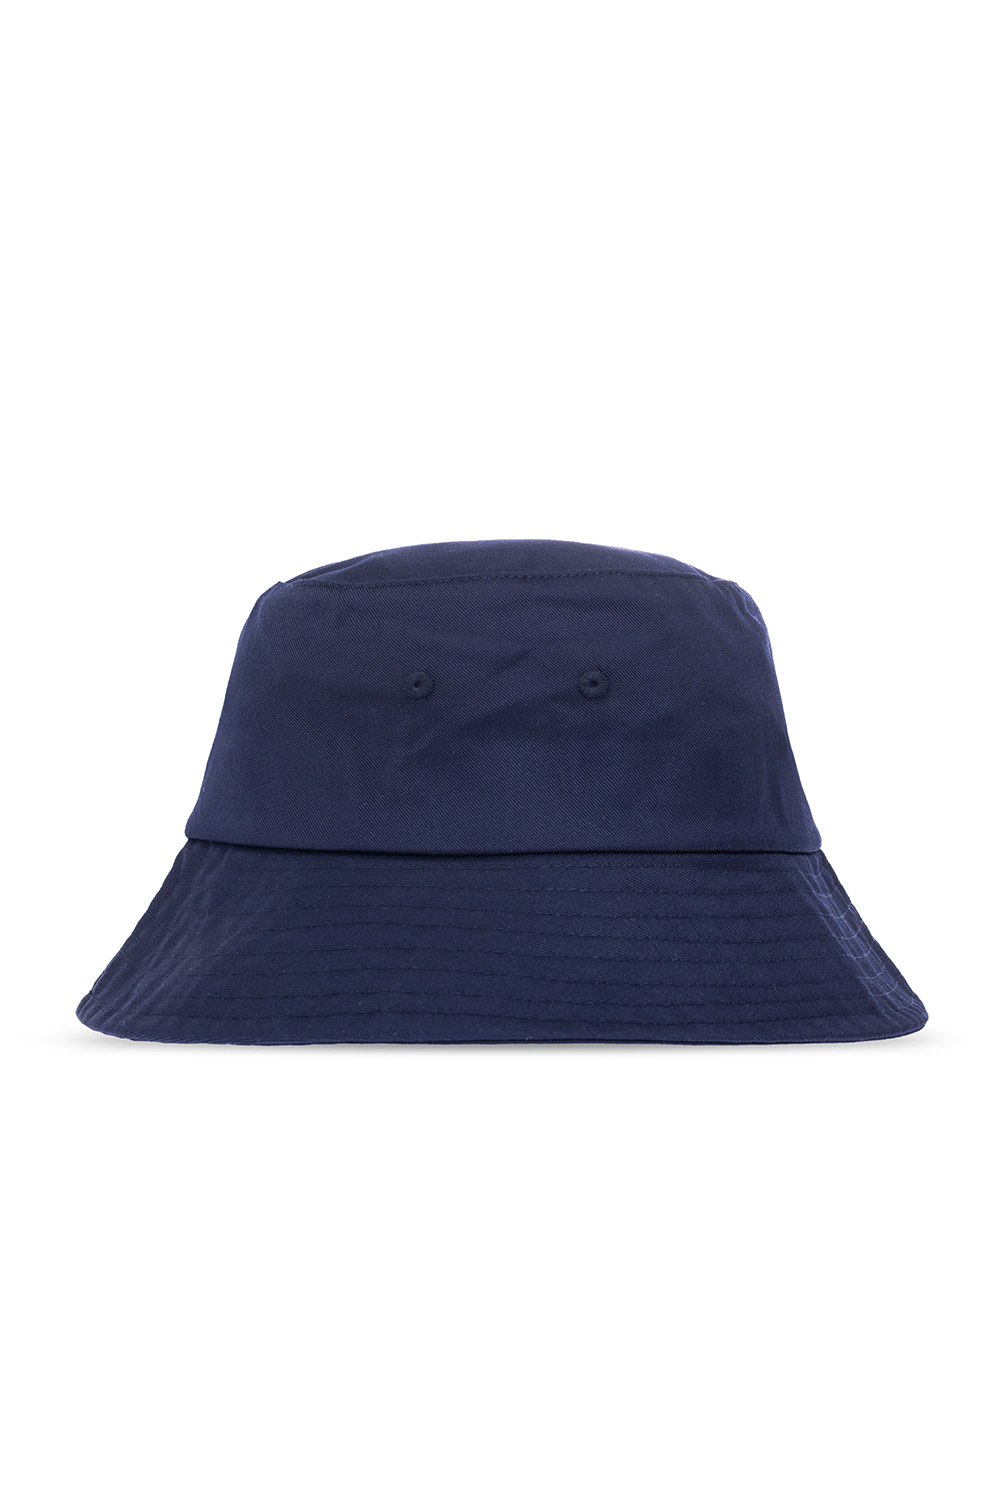 Samsøe Samsøe ‘Anton’ wear hat